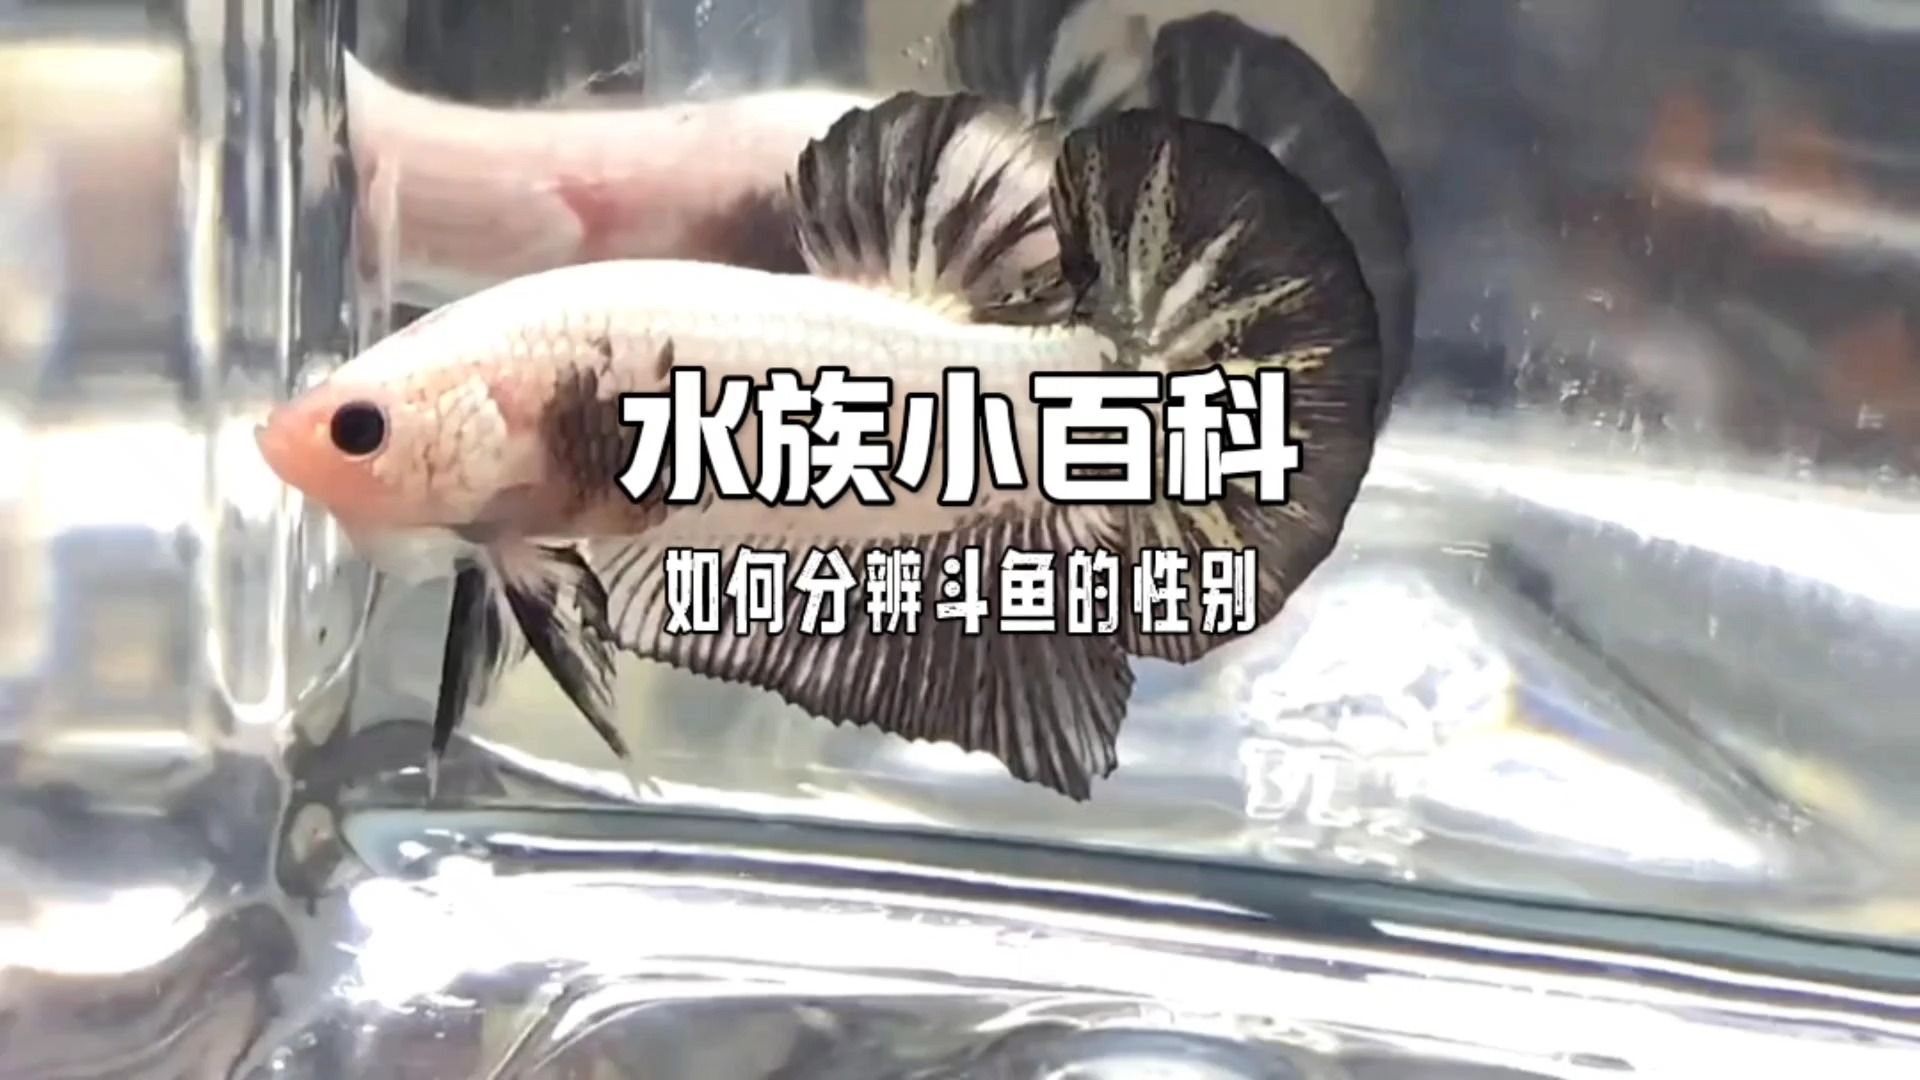 中国斗鱼分辨雌雄图图片